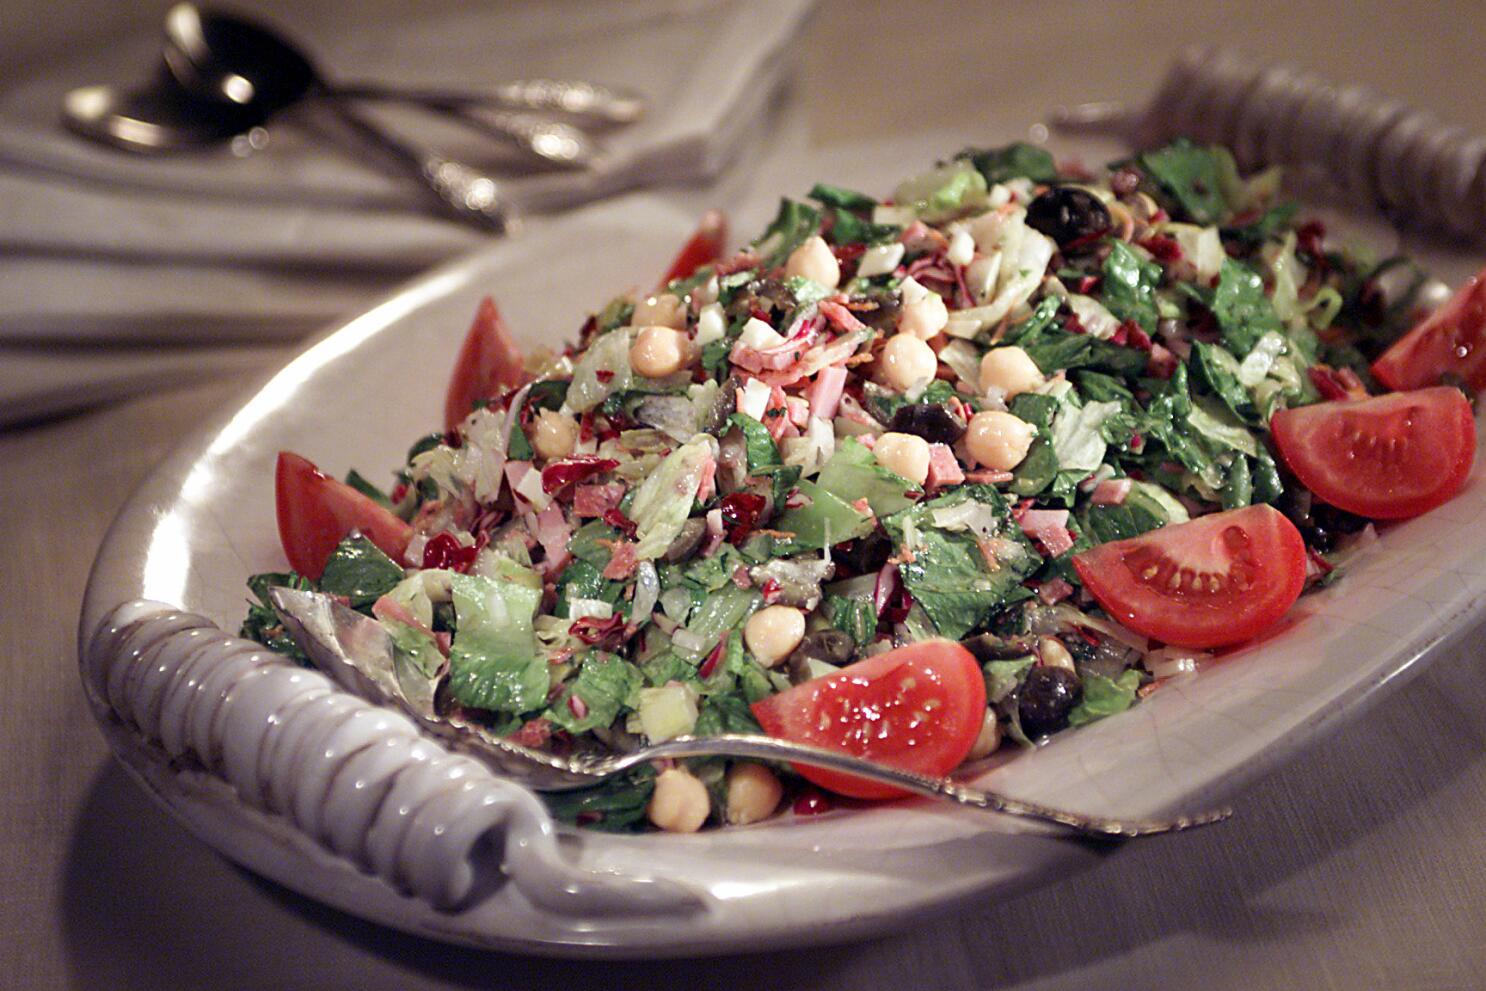 Chopped Antipasto Salad in Mason Jars - Casa de Crews